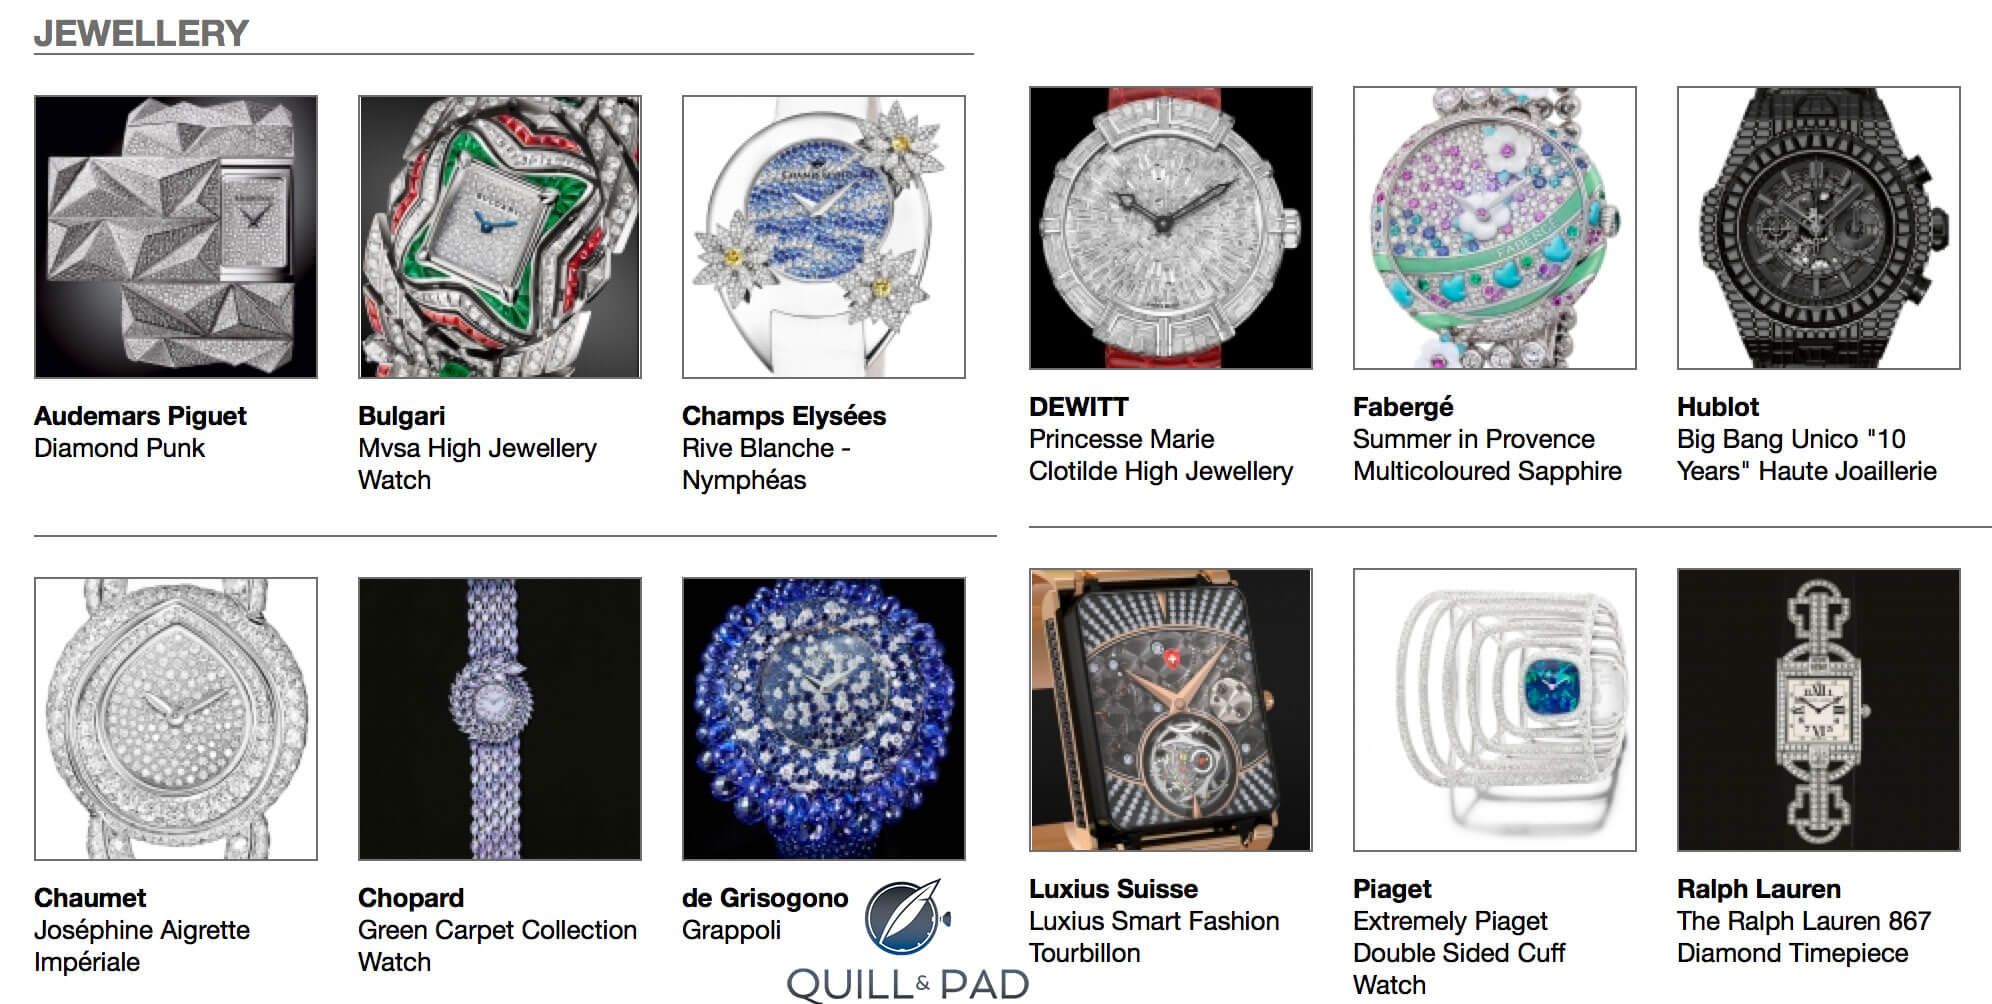 Jewellery watches entered in the 2015 Grand Prix d’Horlogerie de Genève